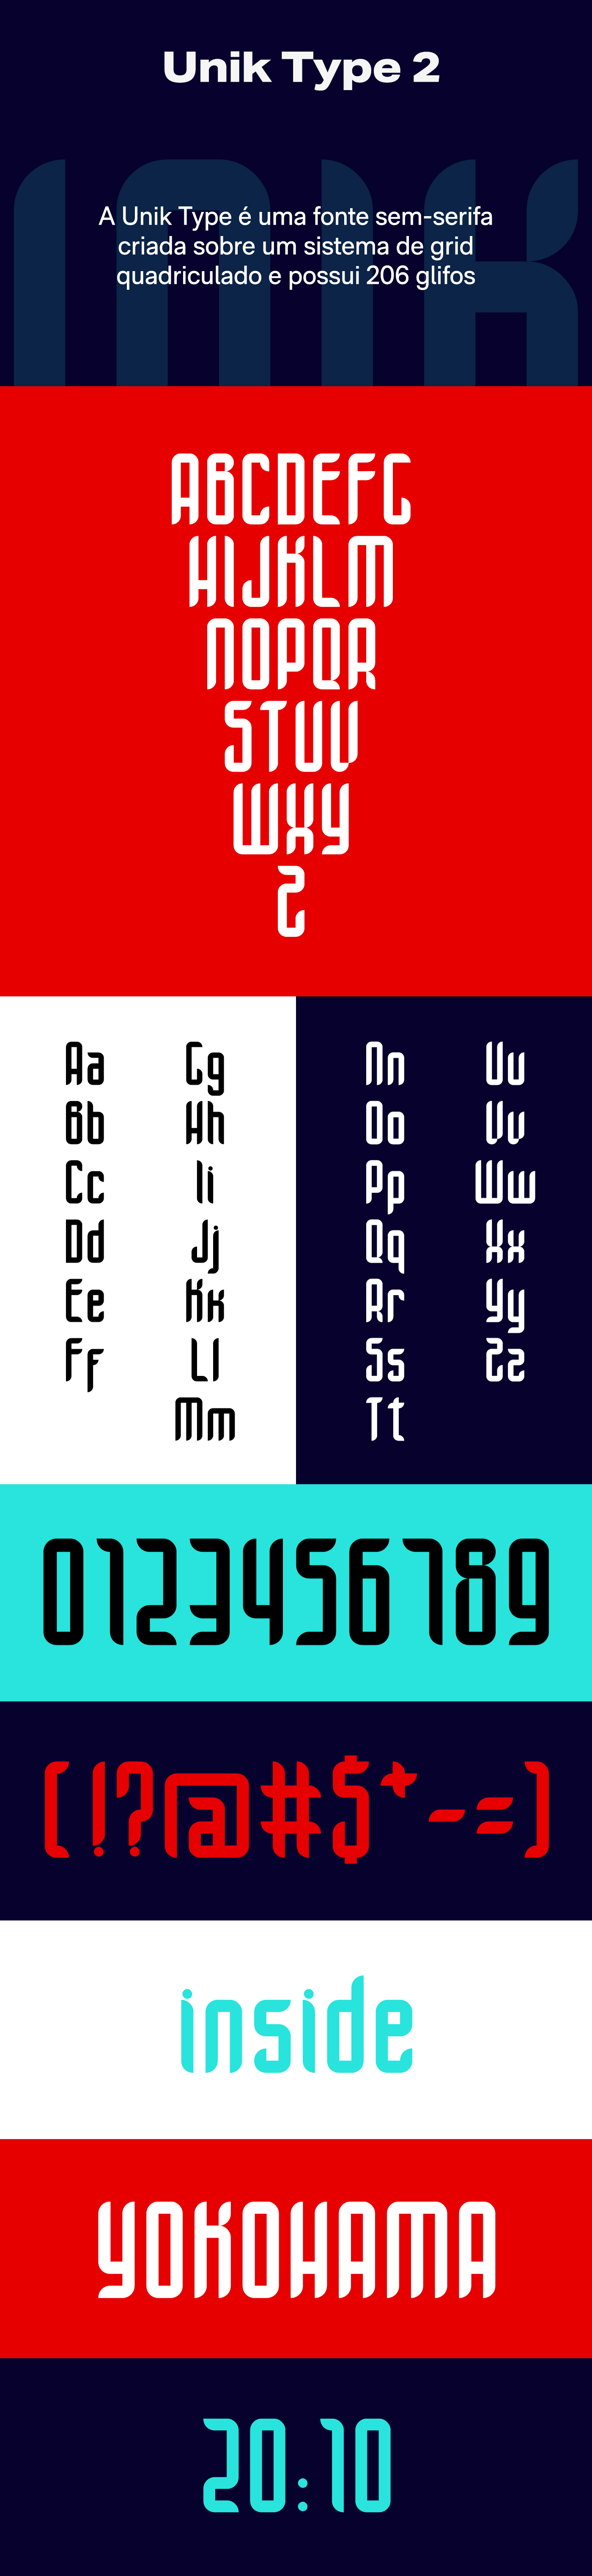 tipografia Typeface